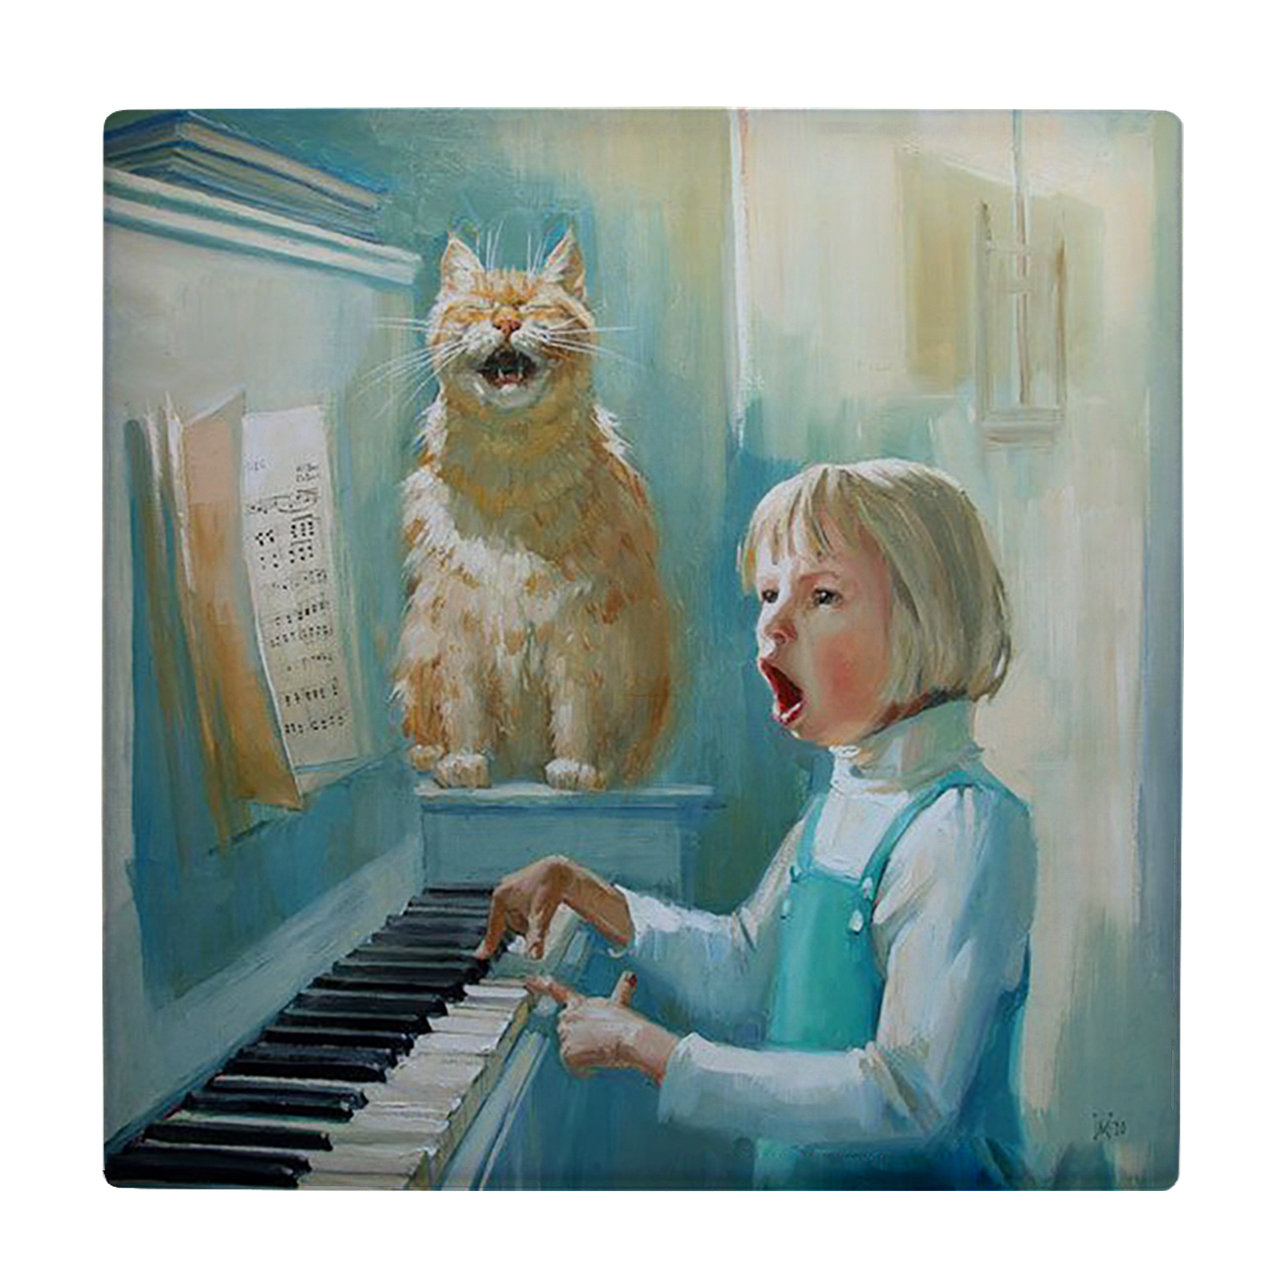  کاشی کارنیلا طرح دختر پیانیست و گربه آوازه خوان مدل لوحی کد klh2020 